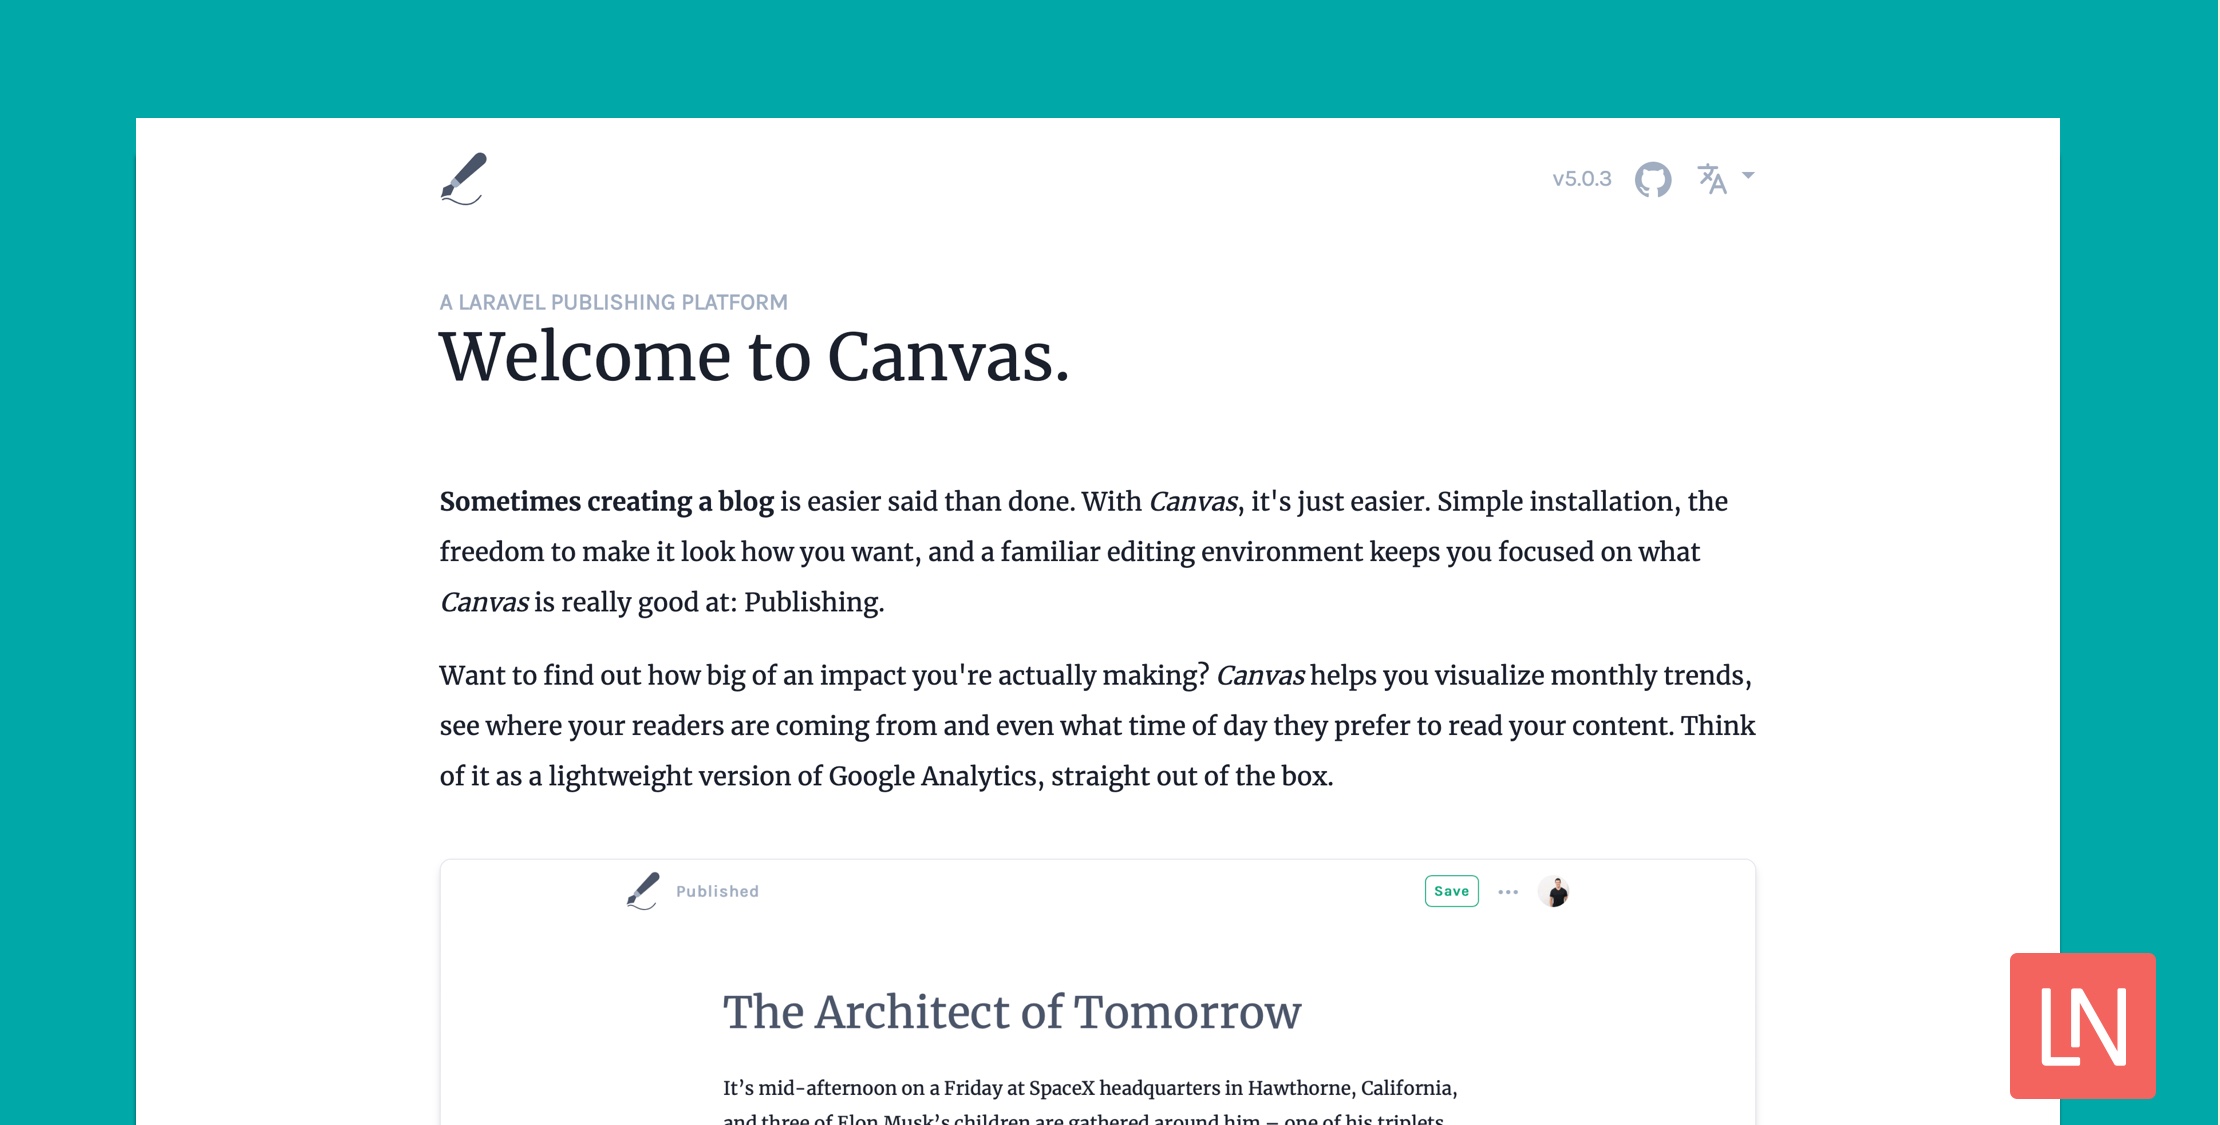 Canvas: A Laravel Publishing Platform image